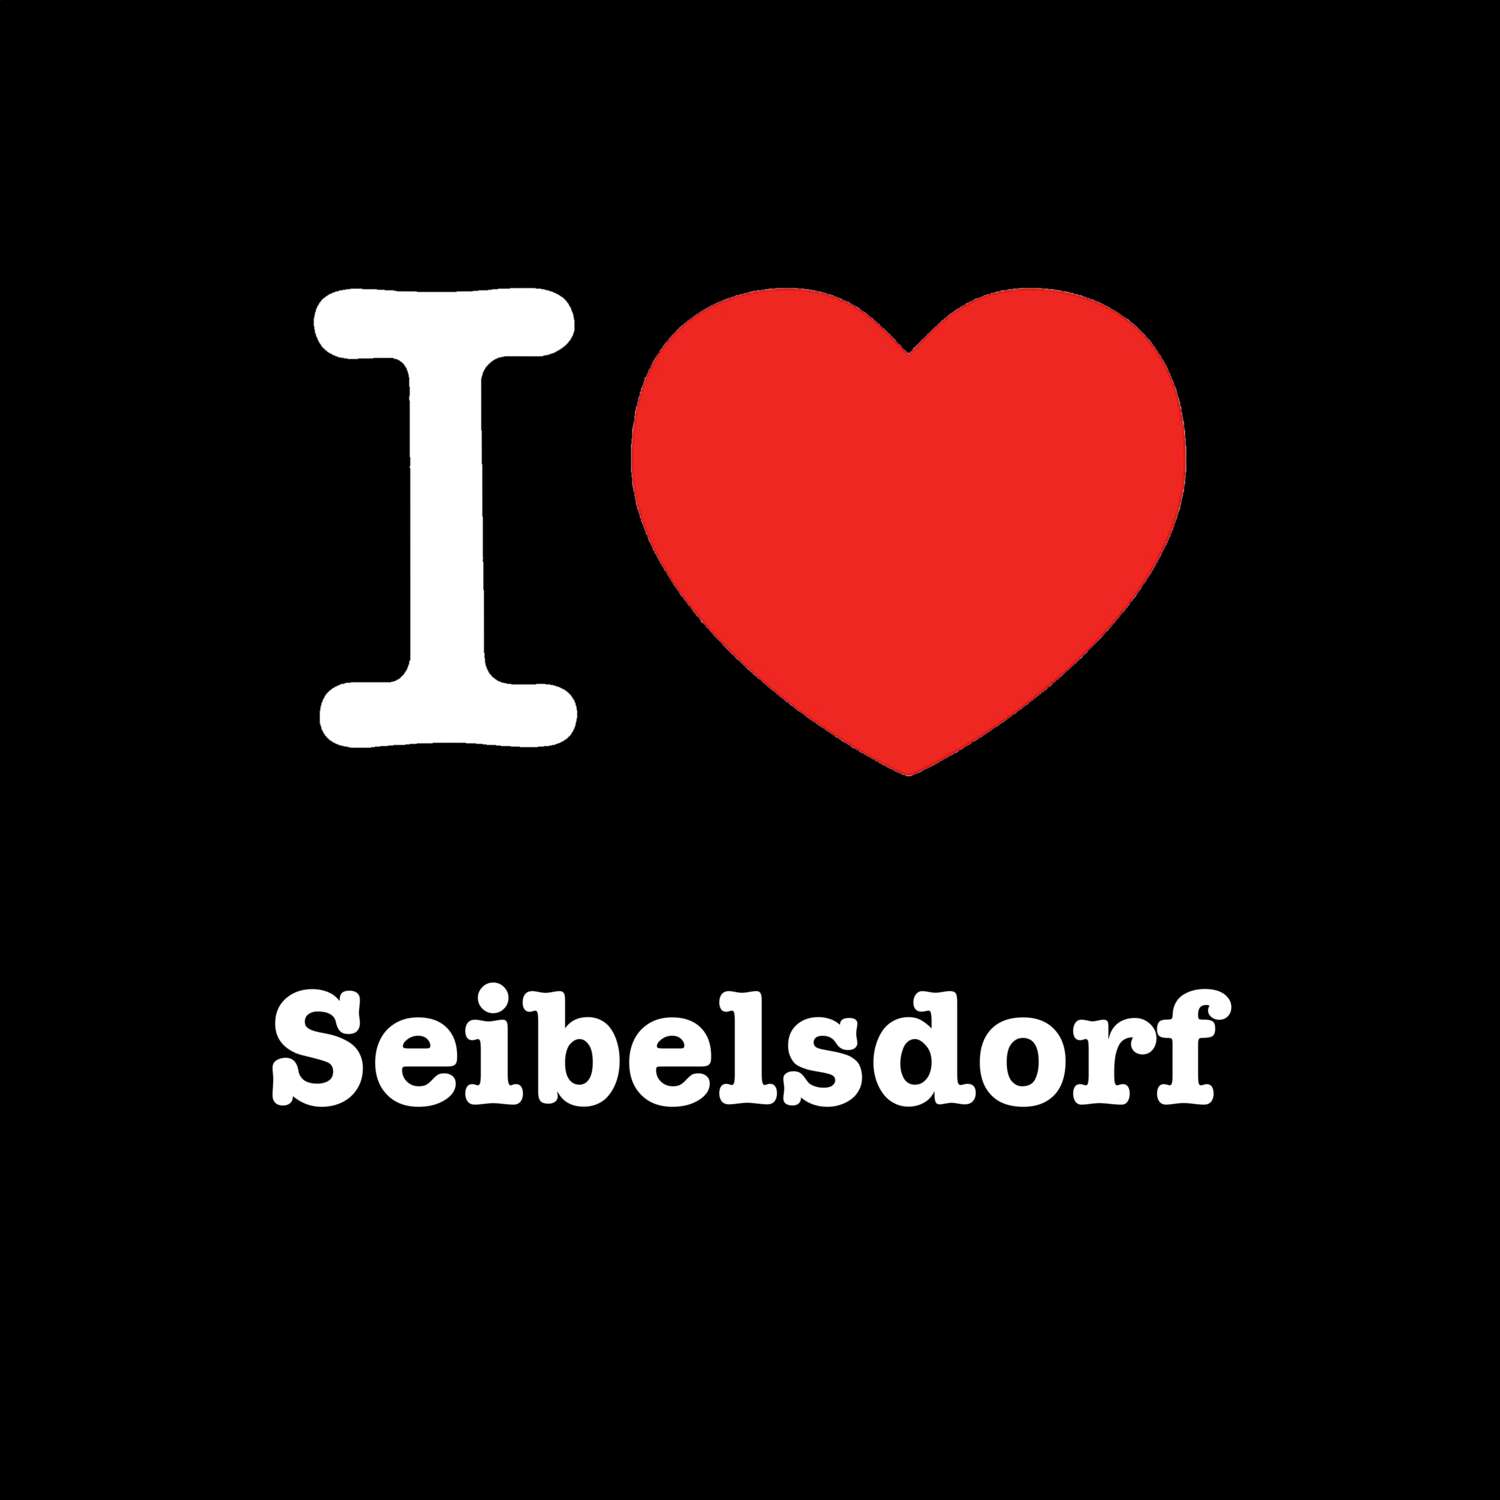 Seibelsdorf T-Shirt »I love«